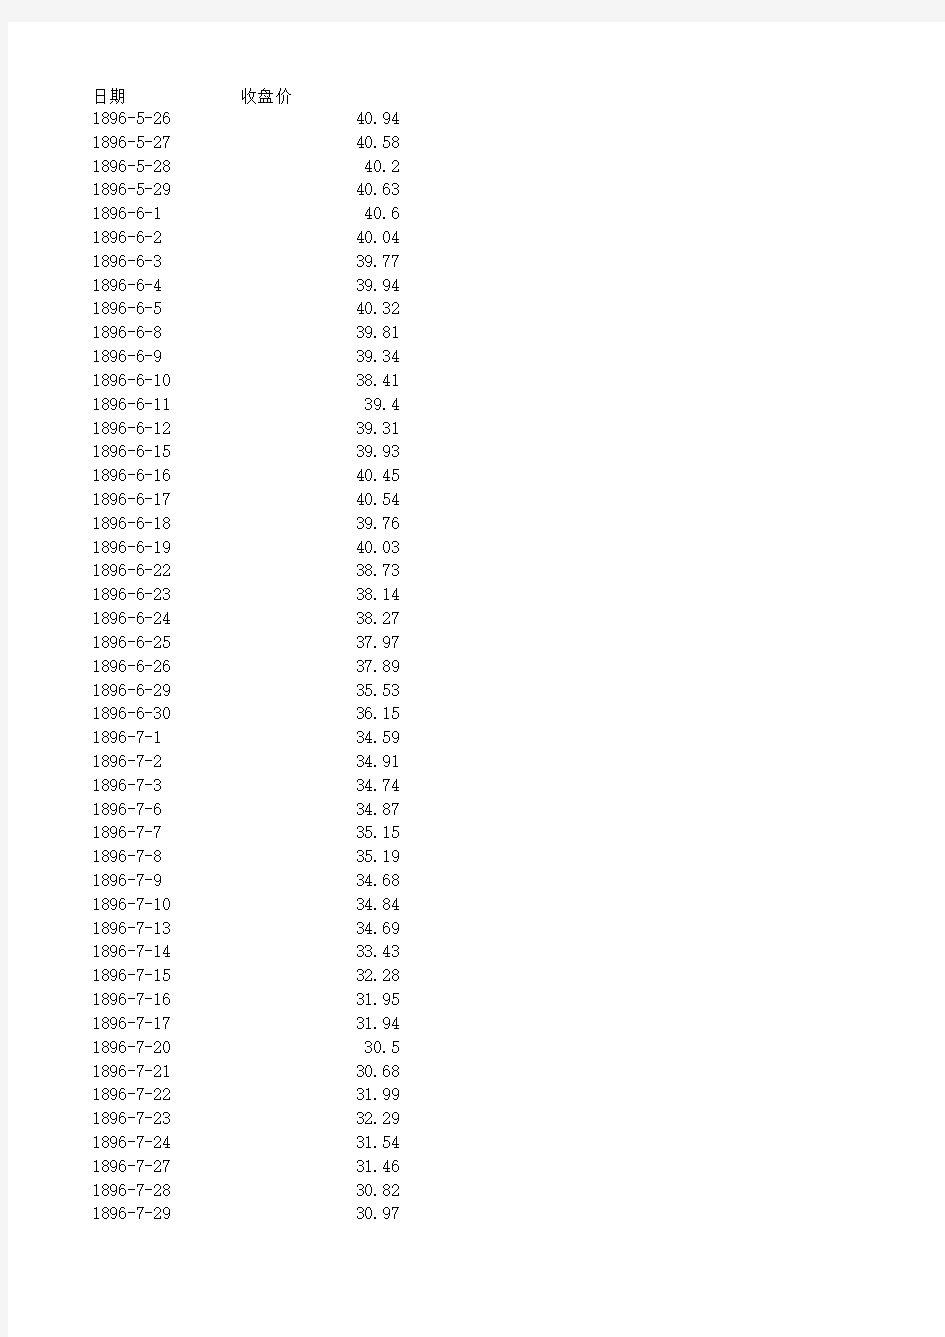 道琼斯指数完整历史收盘价数据(1896-2012)